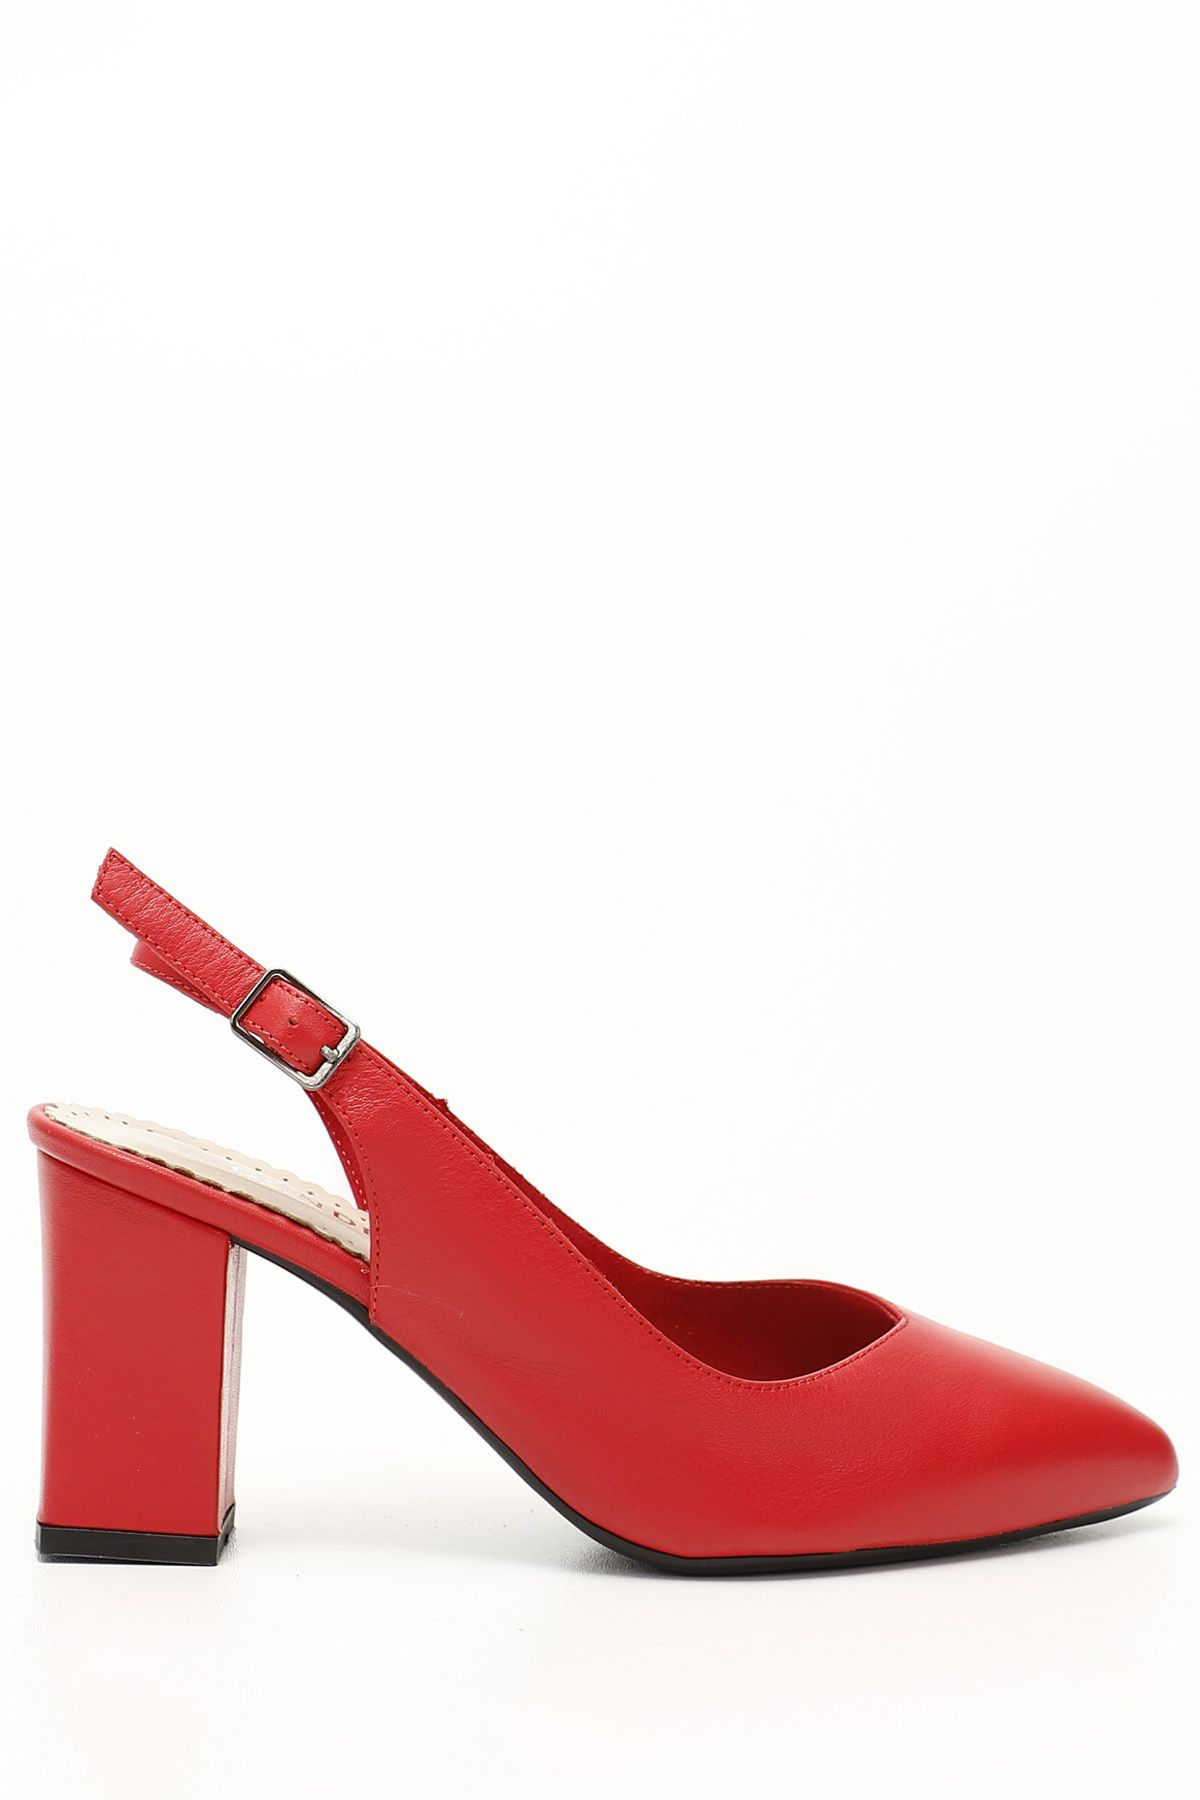 GÖNDERİ(R) Kırmızı Antik Gön Hakiki Deri Sivri Burun Yüksek Kalın Topuklu Kadın Yazlık Ayakkabı 24174